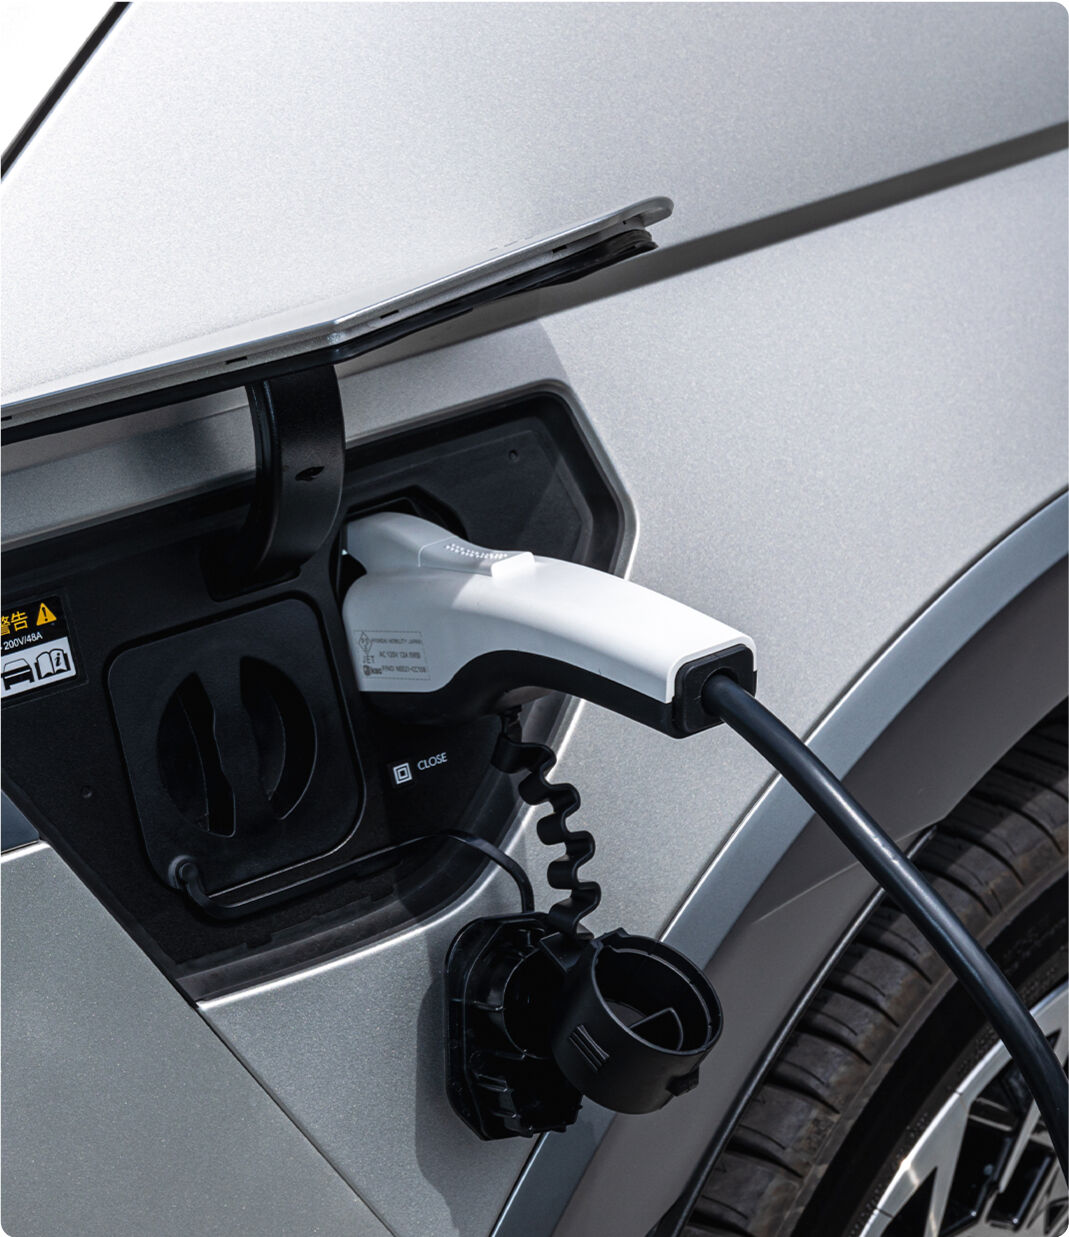 IONIQ 5 (アイオニック 5) 電気自動車 EV 電動充電ドア - Hyundai Mobility Japan (ヒョンデモビリティジャパン)